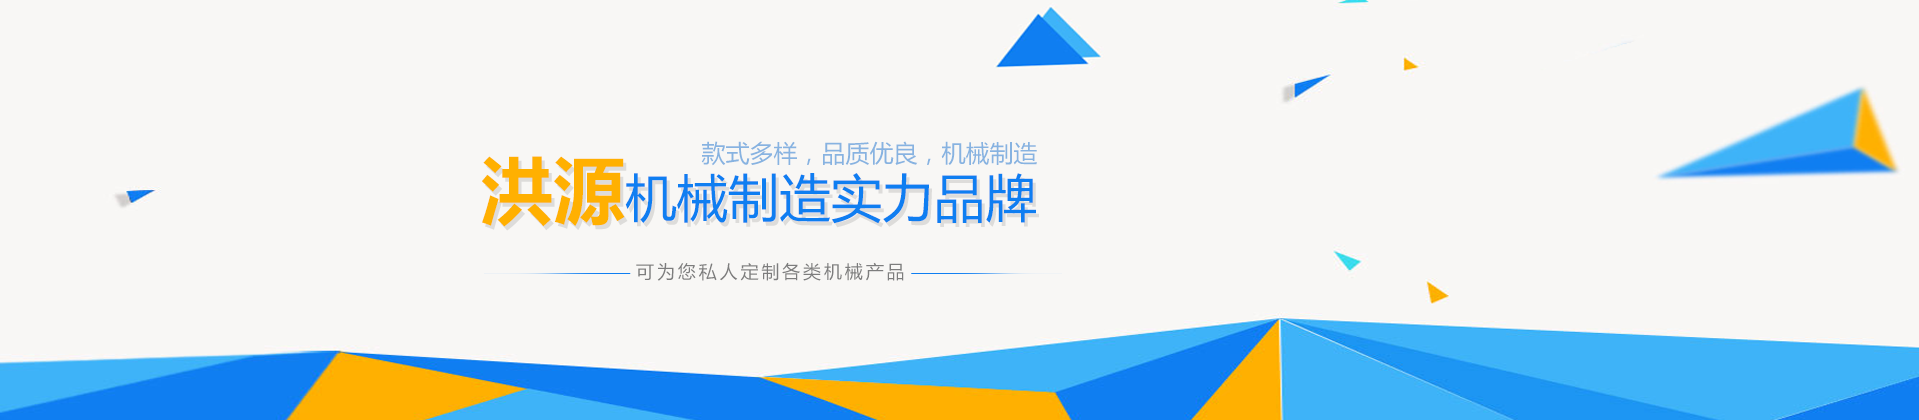 亚搏App买球(中国)有限公司设计